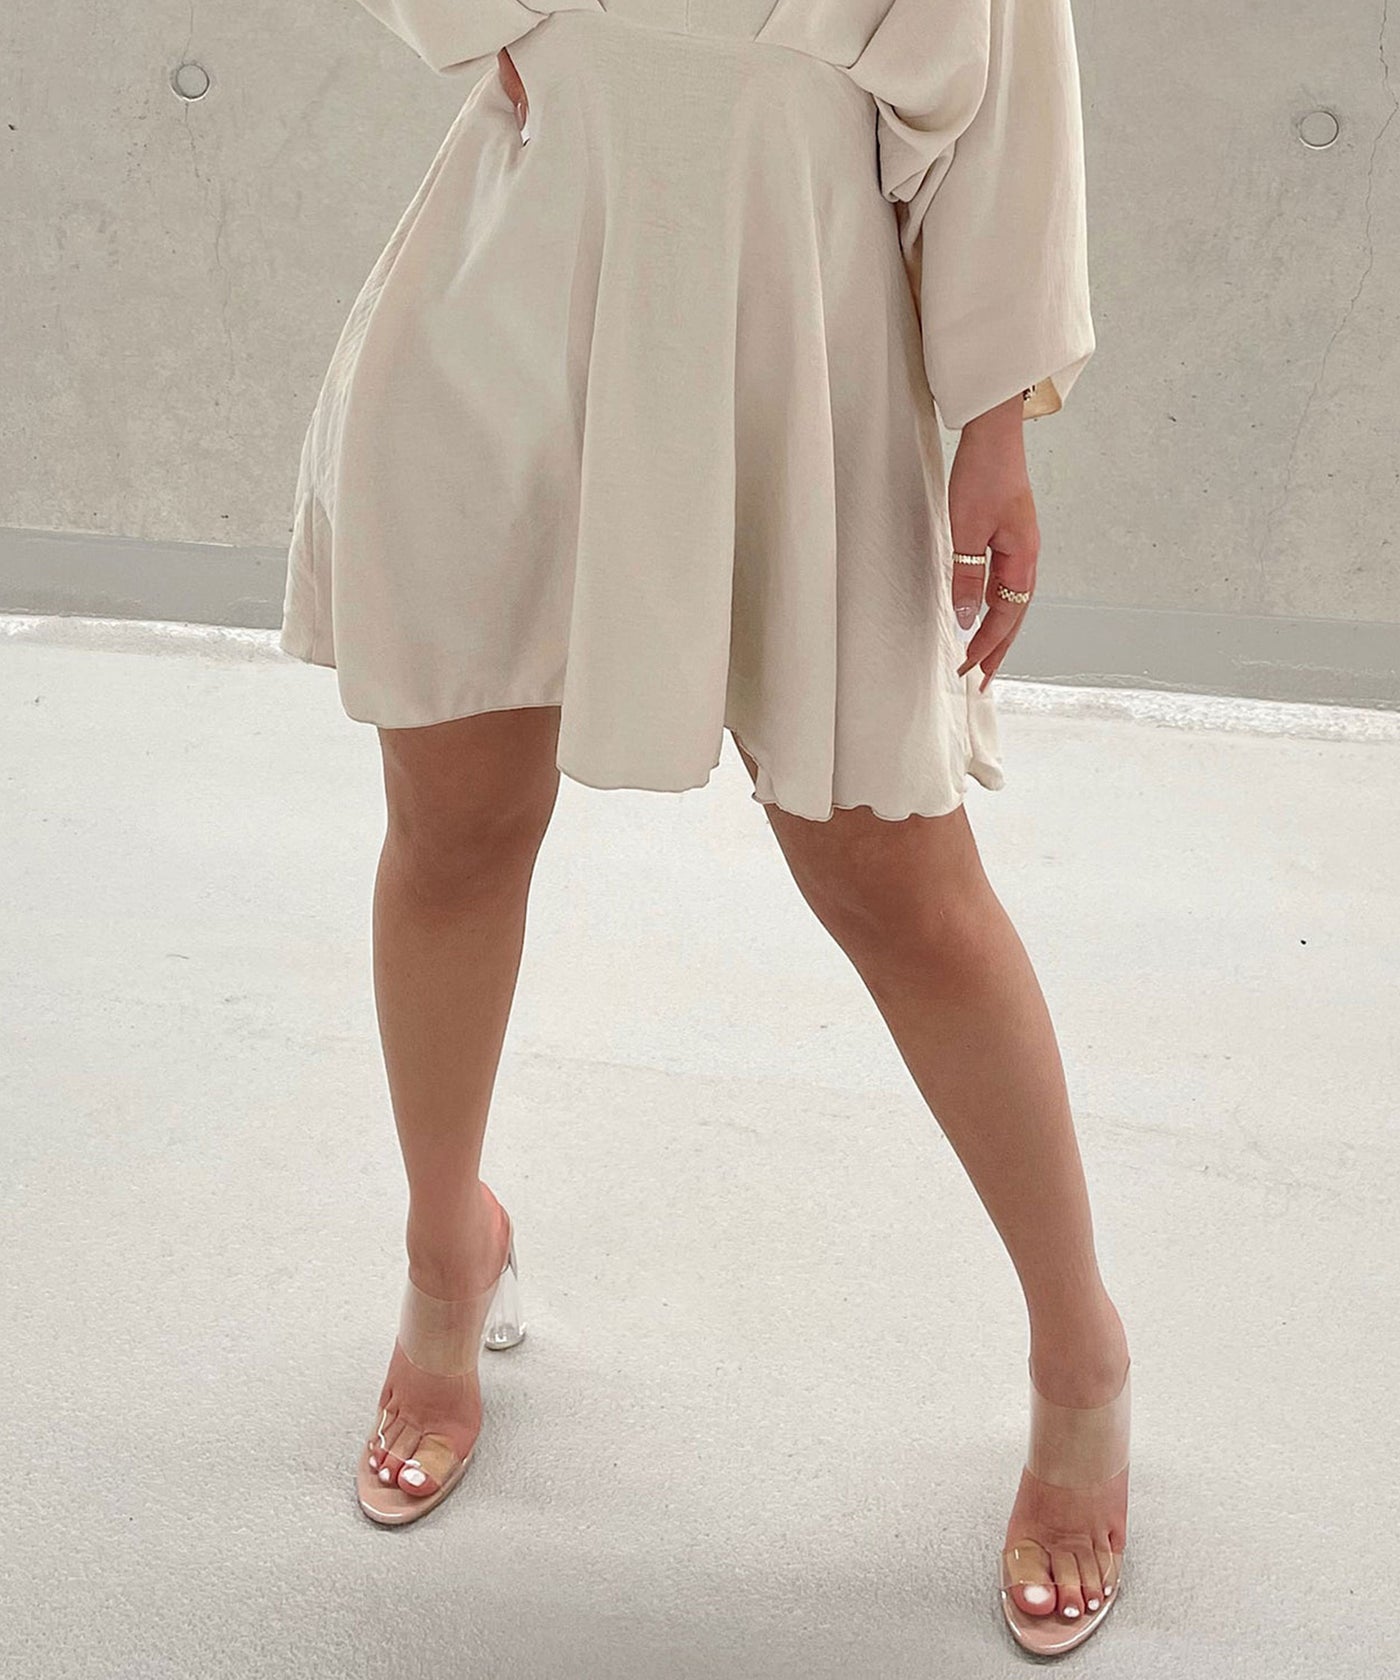 Sandale Transparent Nude  Ladypolitan - Fashion Onlineshop für Damen   